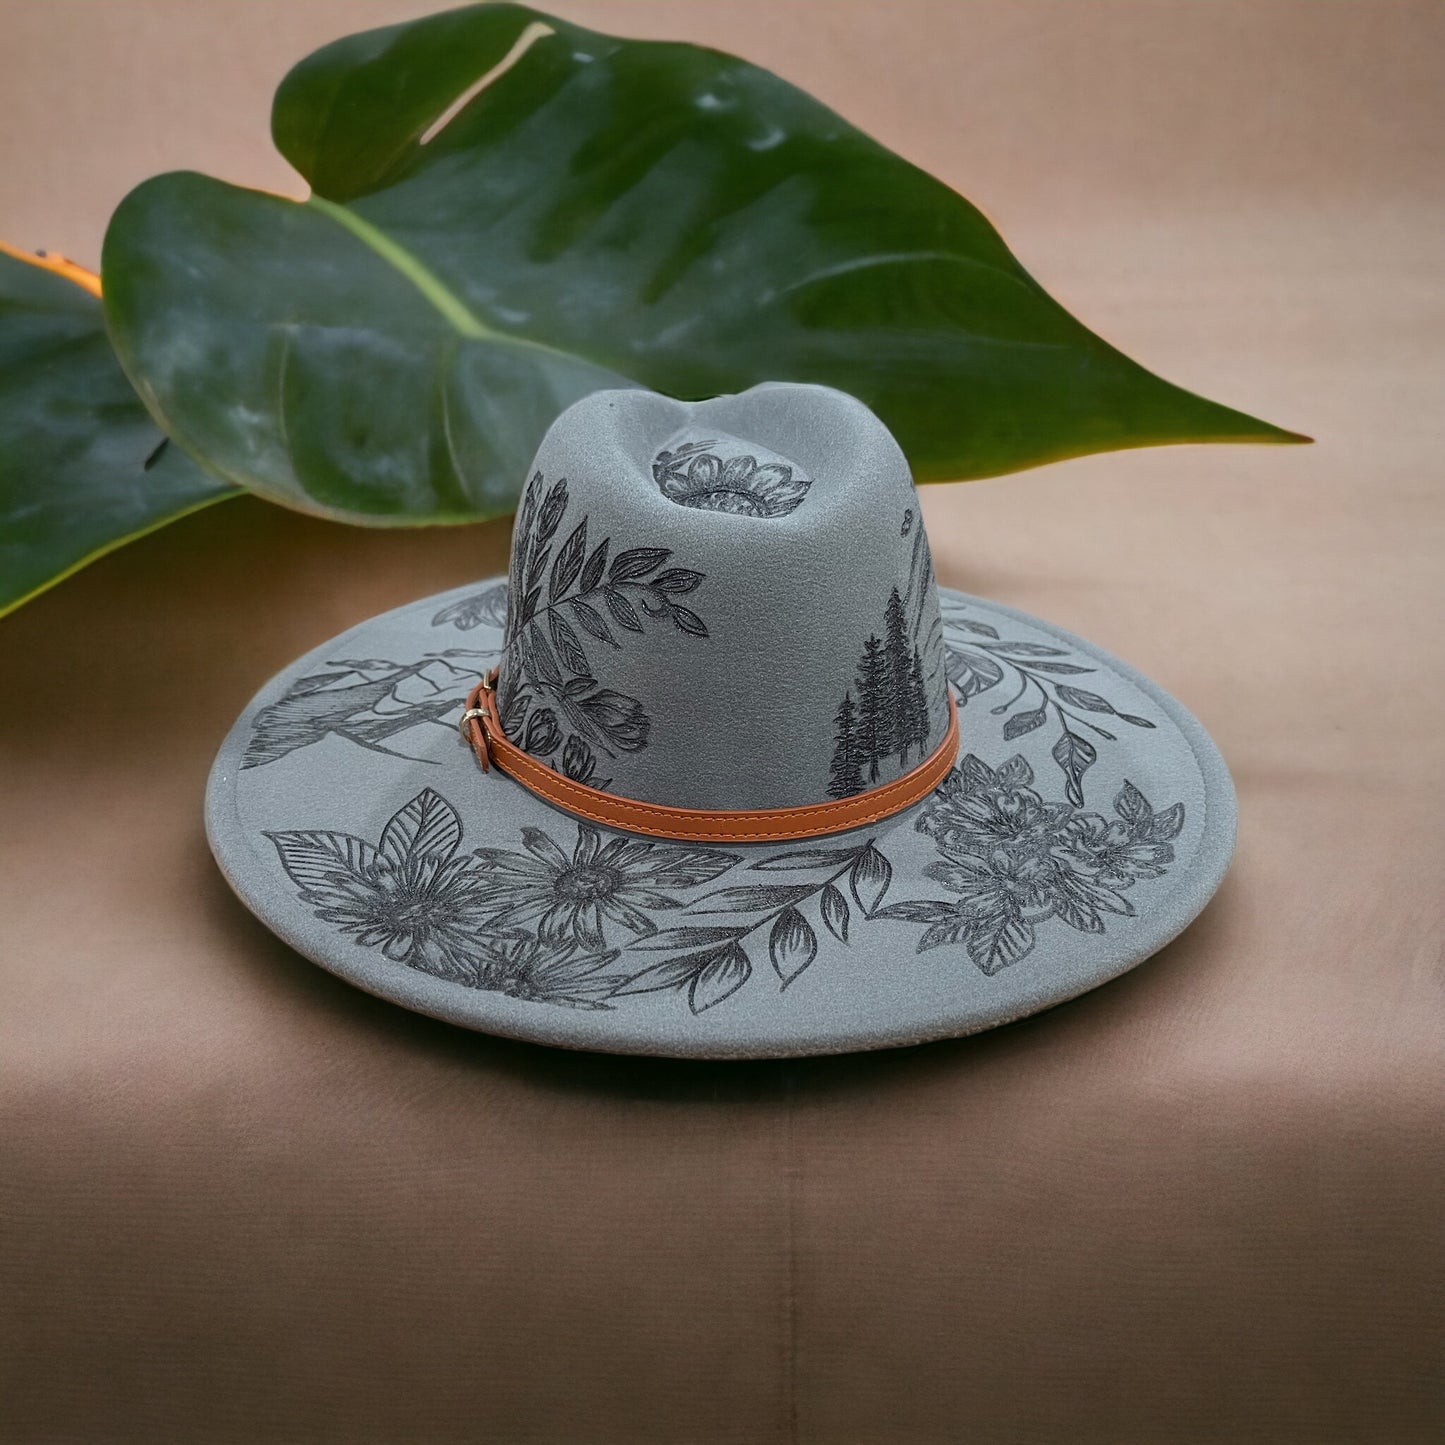 Rainier in Bloom - Burned Hat